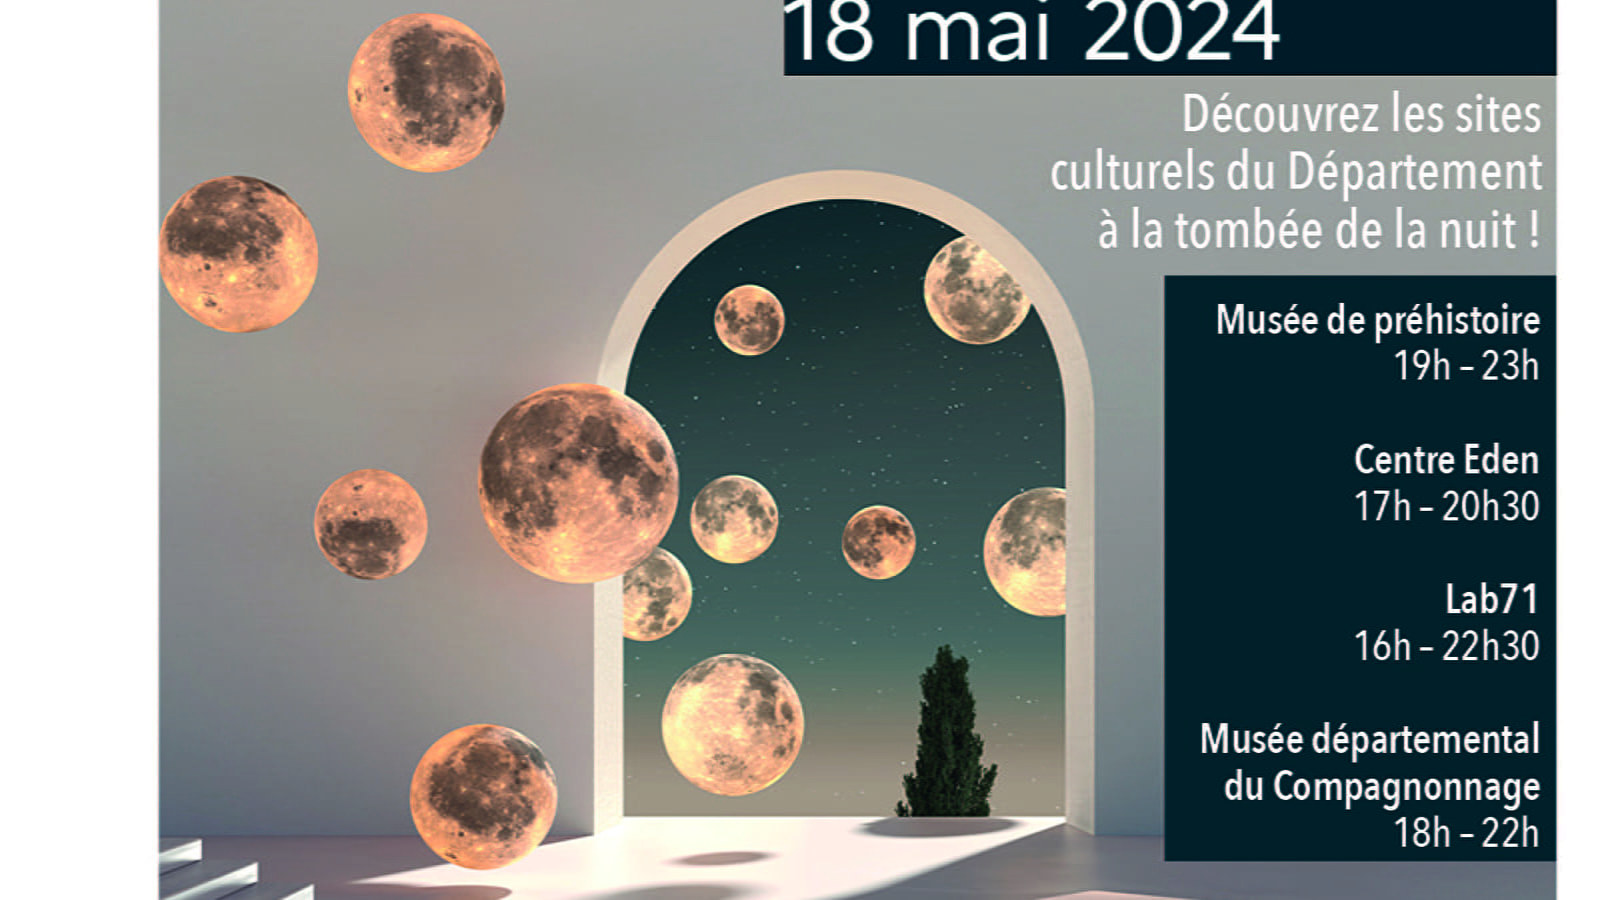 Nuit Européenne des musées Le 18 mai 2024